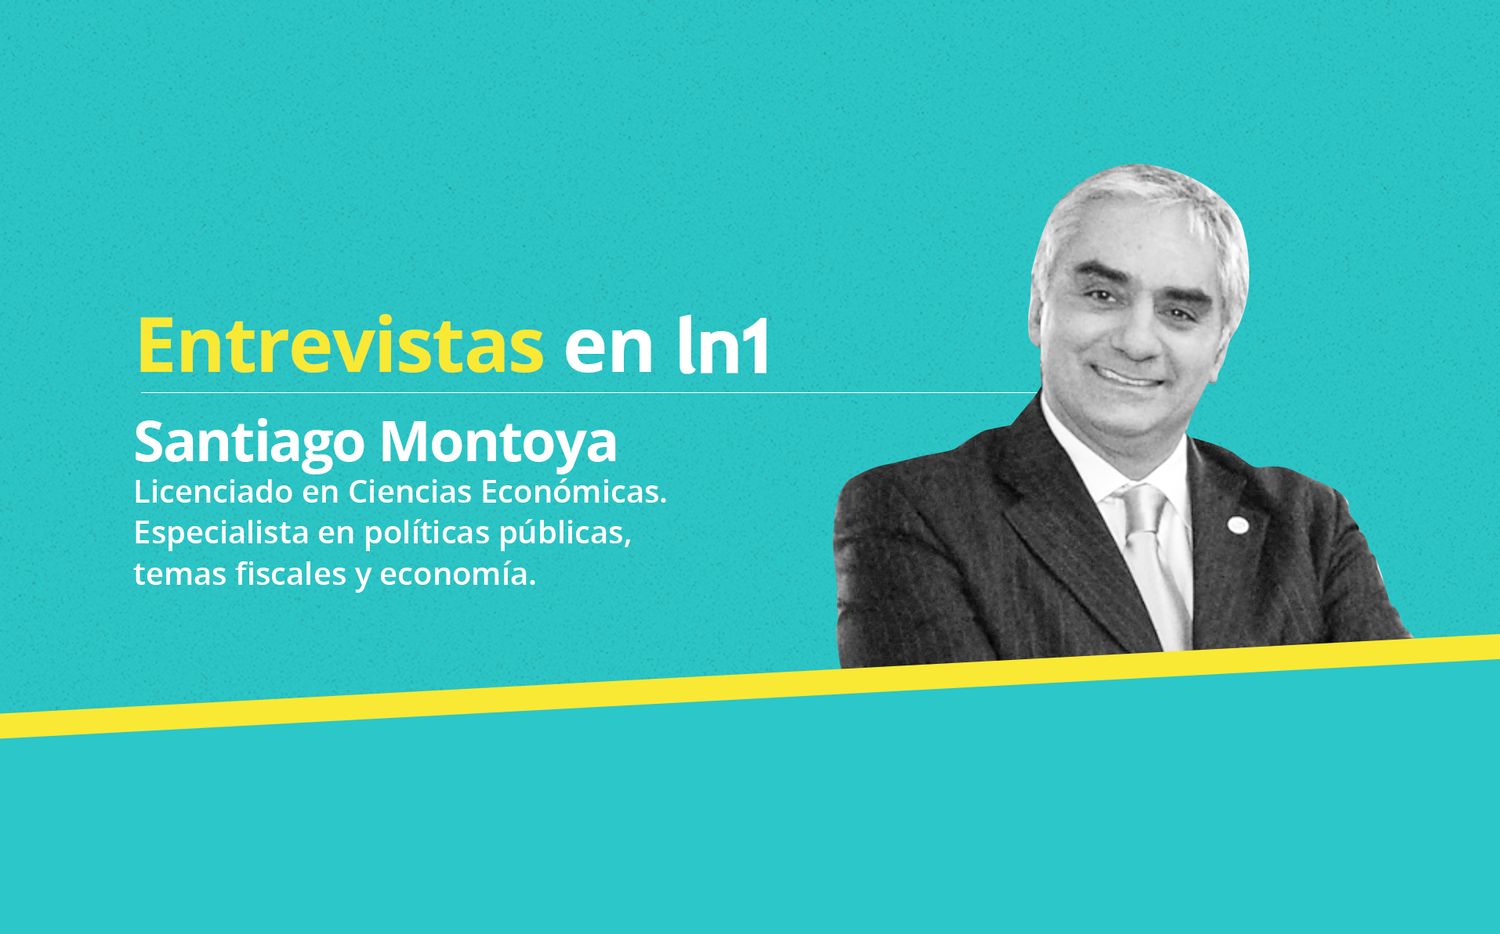 Santiago Montoya: "A la solidaridad se la invoca con impuestos hace 10 años siempre para los mismos"